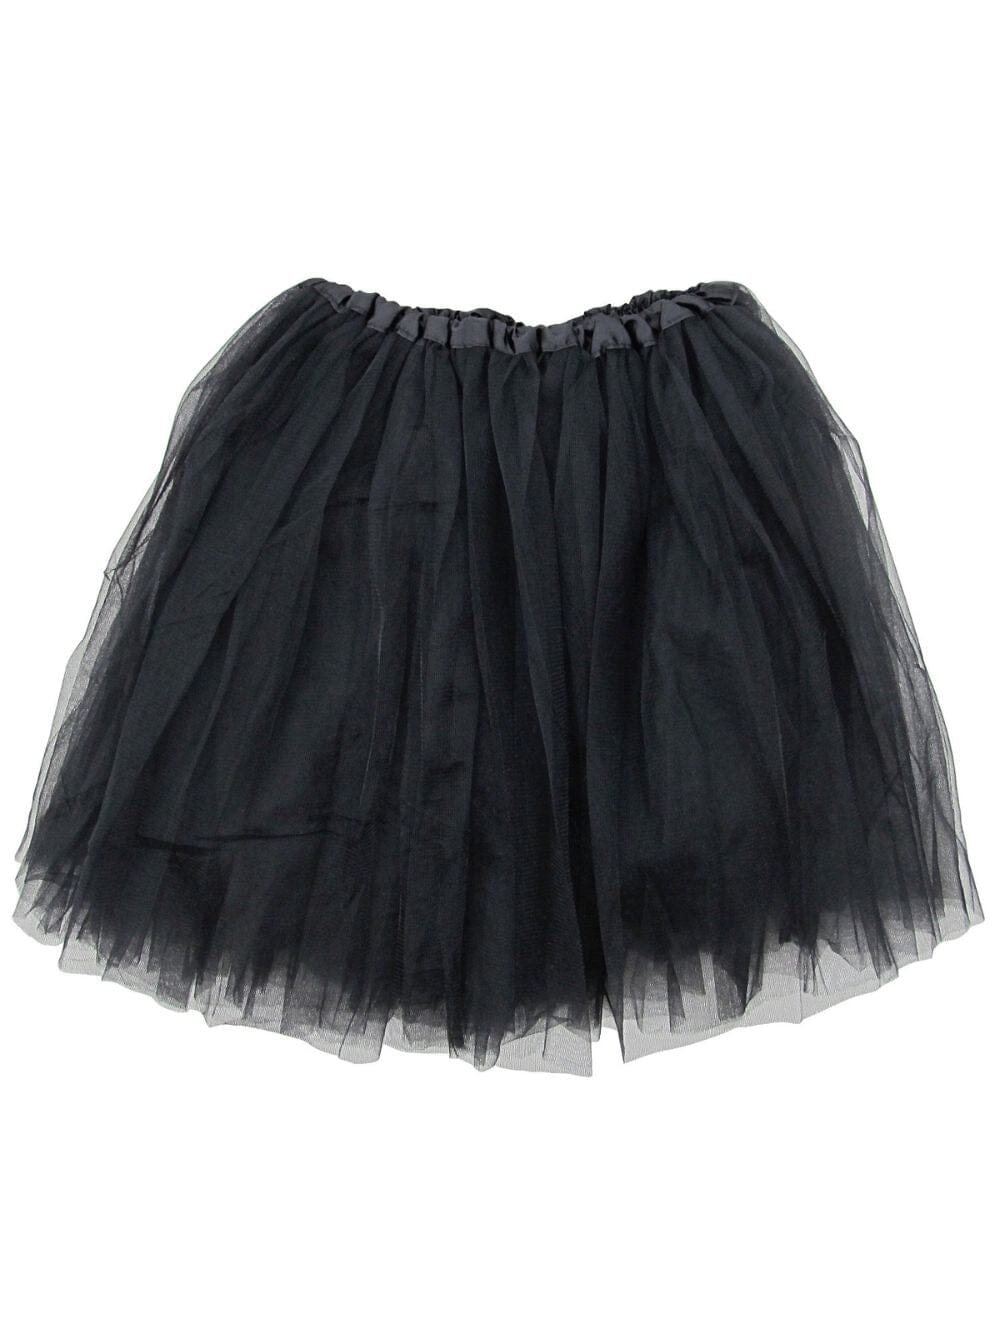 Black Tutu Skirt for Adult - Women's Size 3-Layer Basic Ballet Costume Dance Tutus - Sydney So Sweet